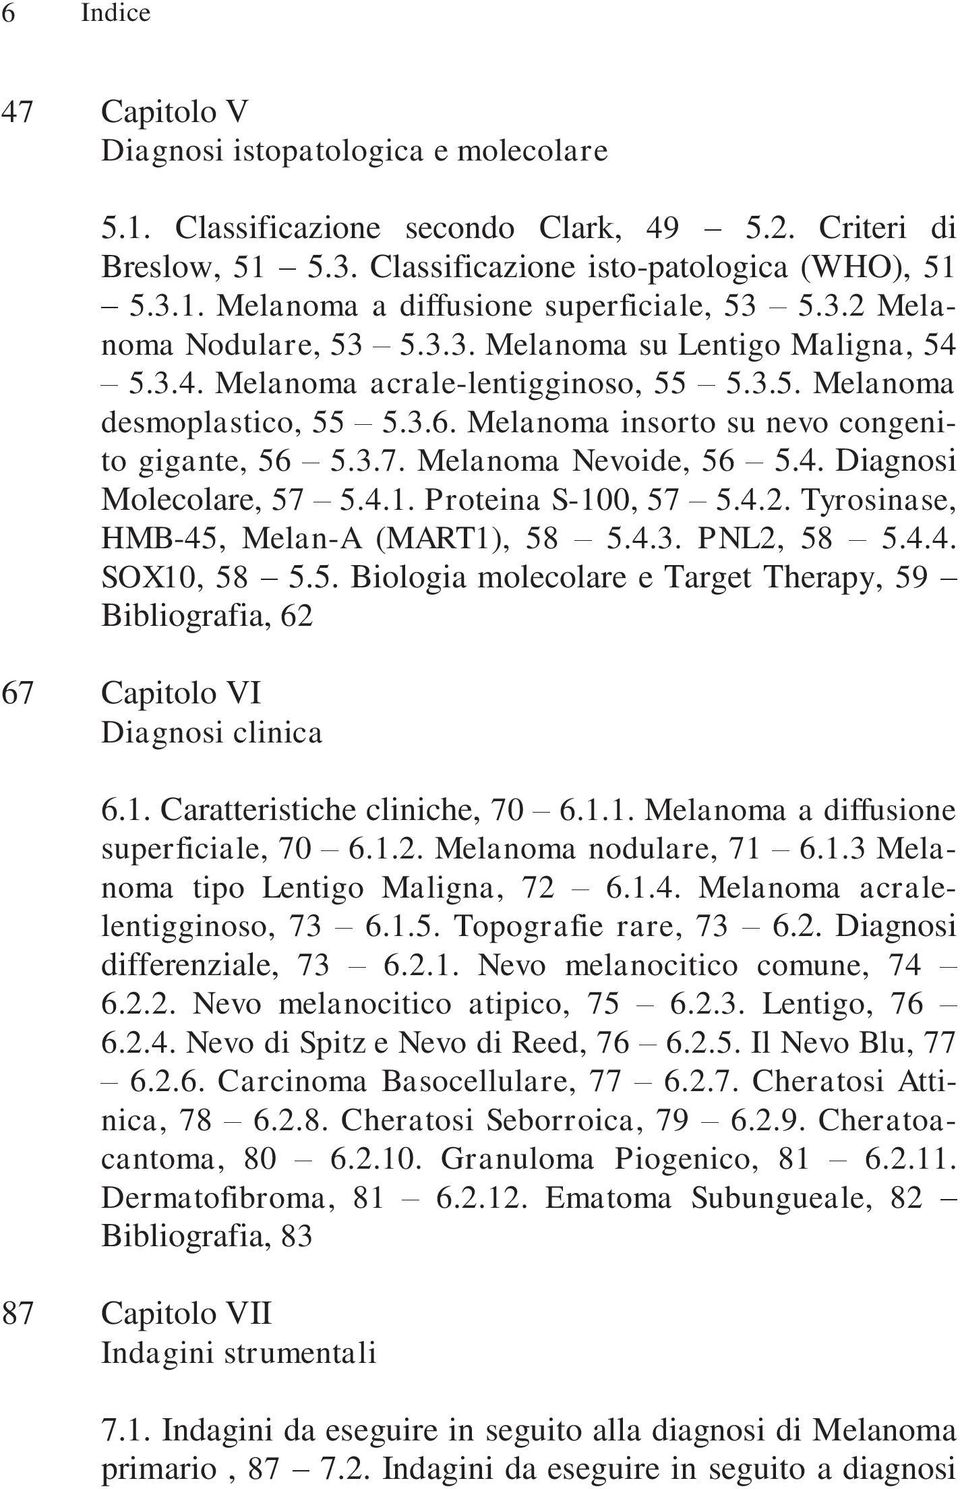 Melanoma Nevoide, 56 5.4. Diagnosi Molecolare, 57 5.4.1. Proteina S-100, 57 5.4.2. Tyrosinase, HMB-45, Melan-A (MART1), 58 5.4.3. PNL2, 58 5.4.4. SOX10, 58 5.5. Biologia molecolare e Target Therapy, 59 Bibliografia, 62 67 Capitolo VI Diagnosi clinica 6.